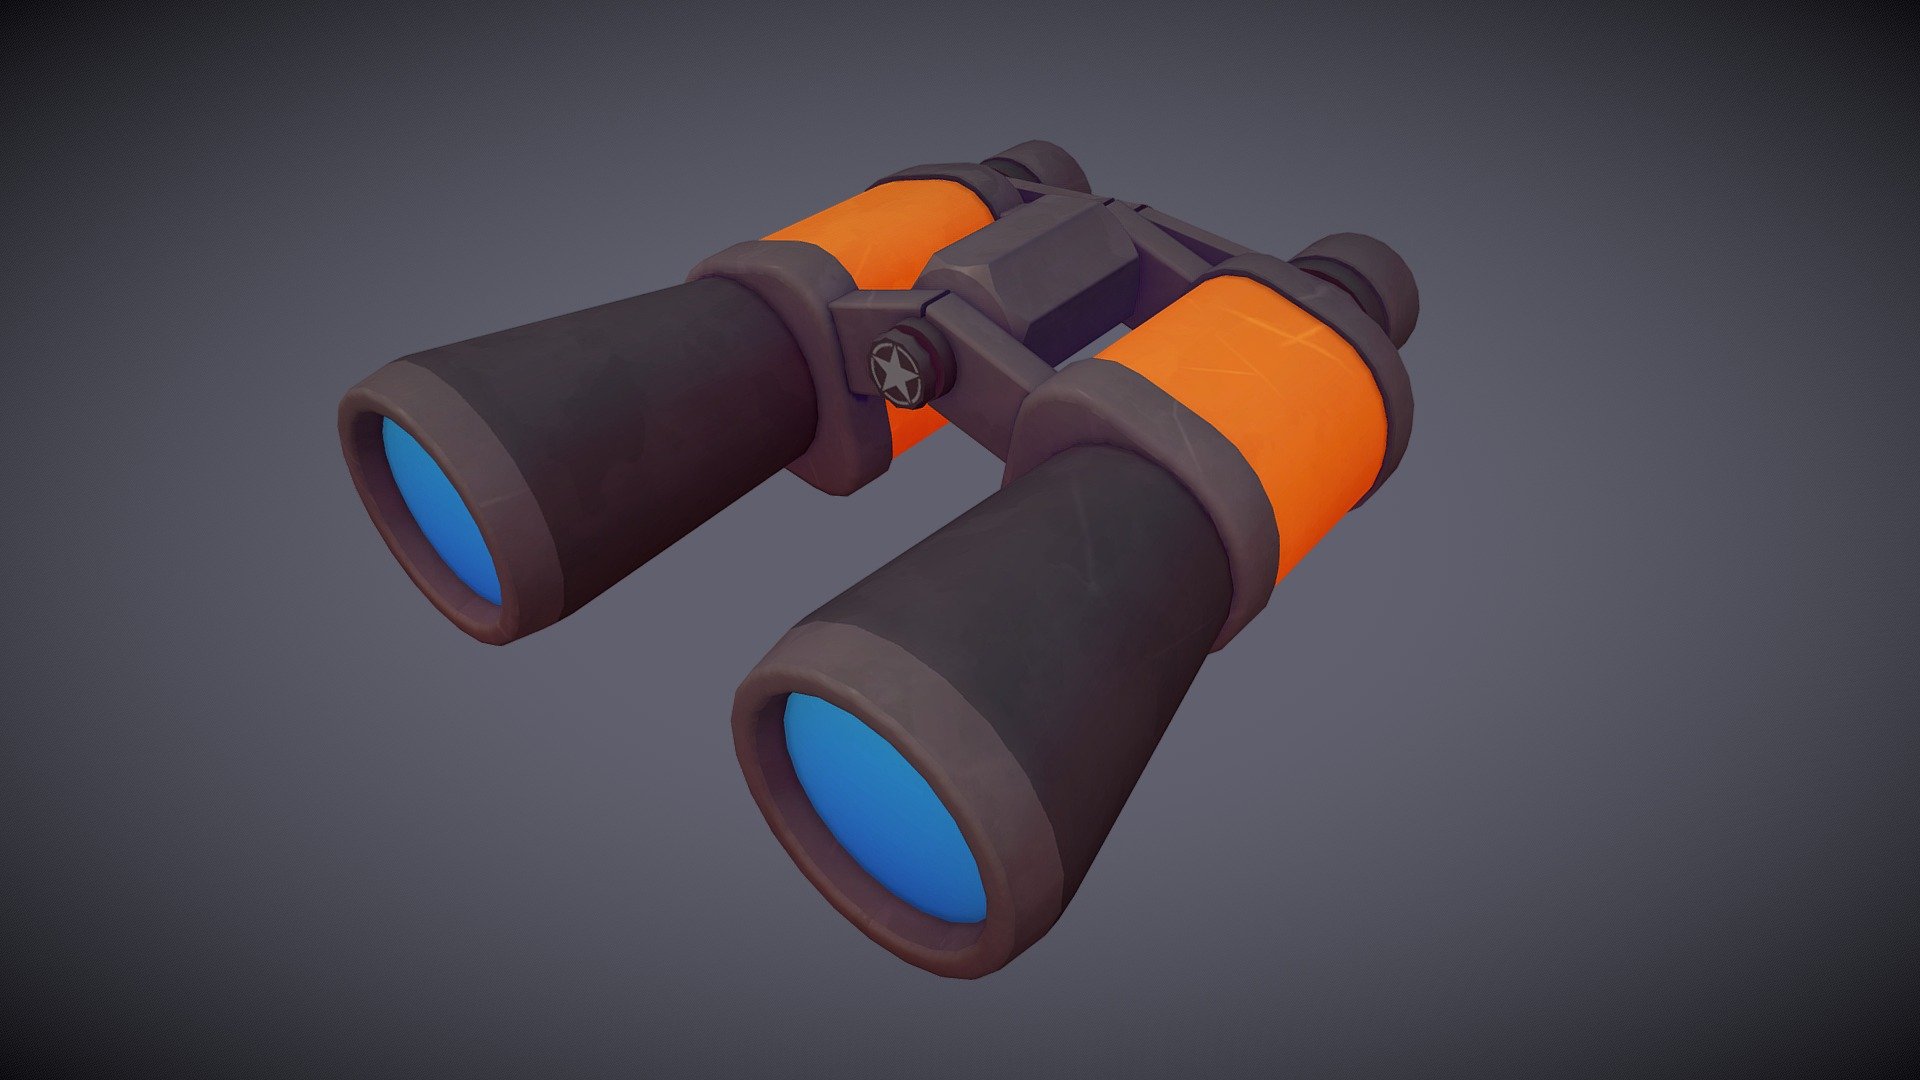 Binoculars Stylized 3D Model
Blender - Substance Painter - Binoculars - 3D model by Emre Alaca (@emrealaca3d) 3d model